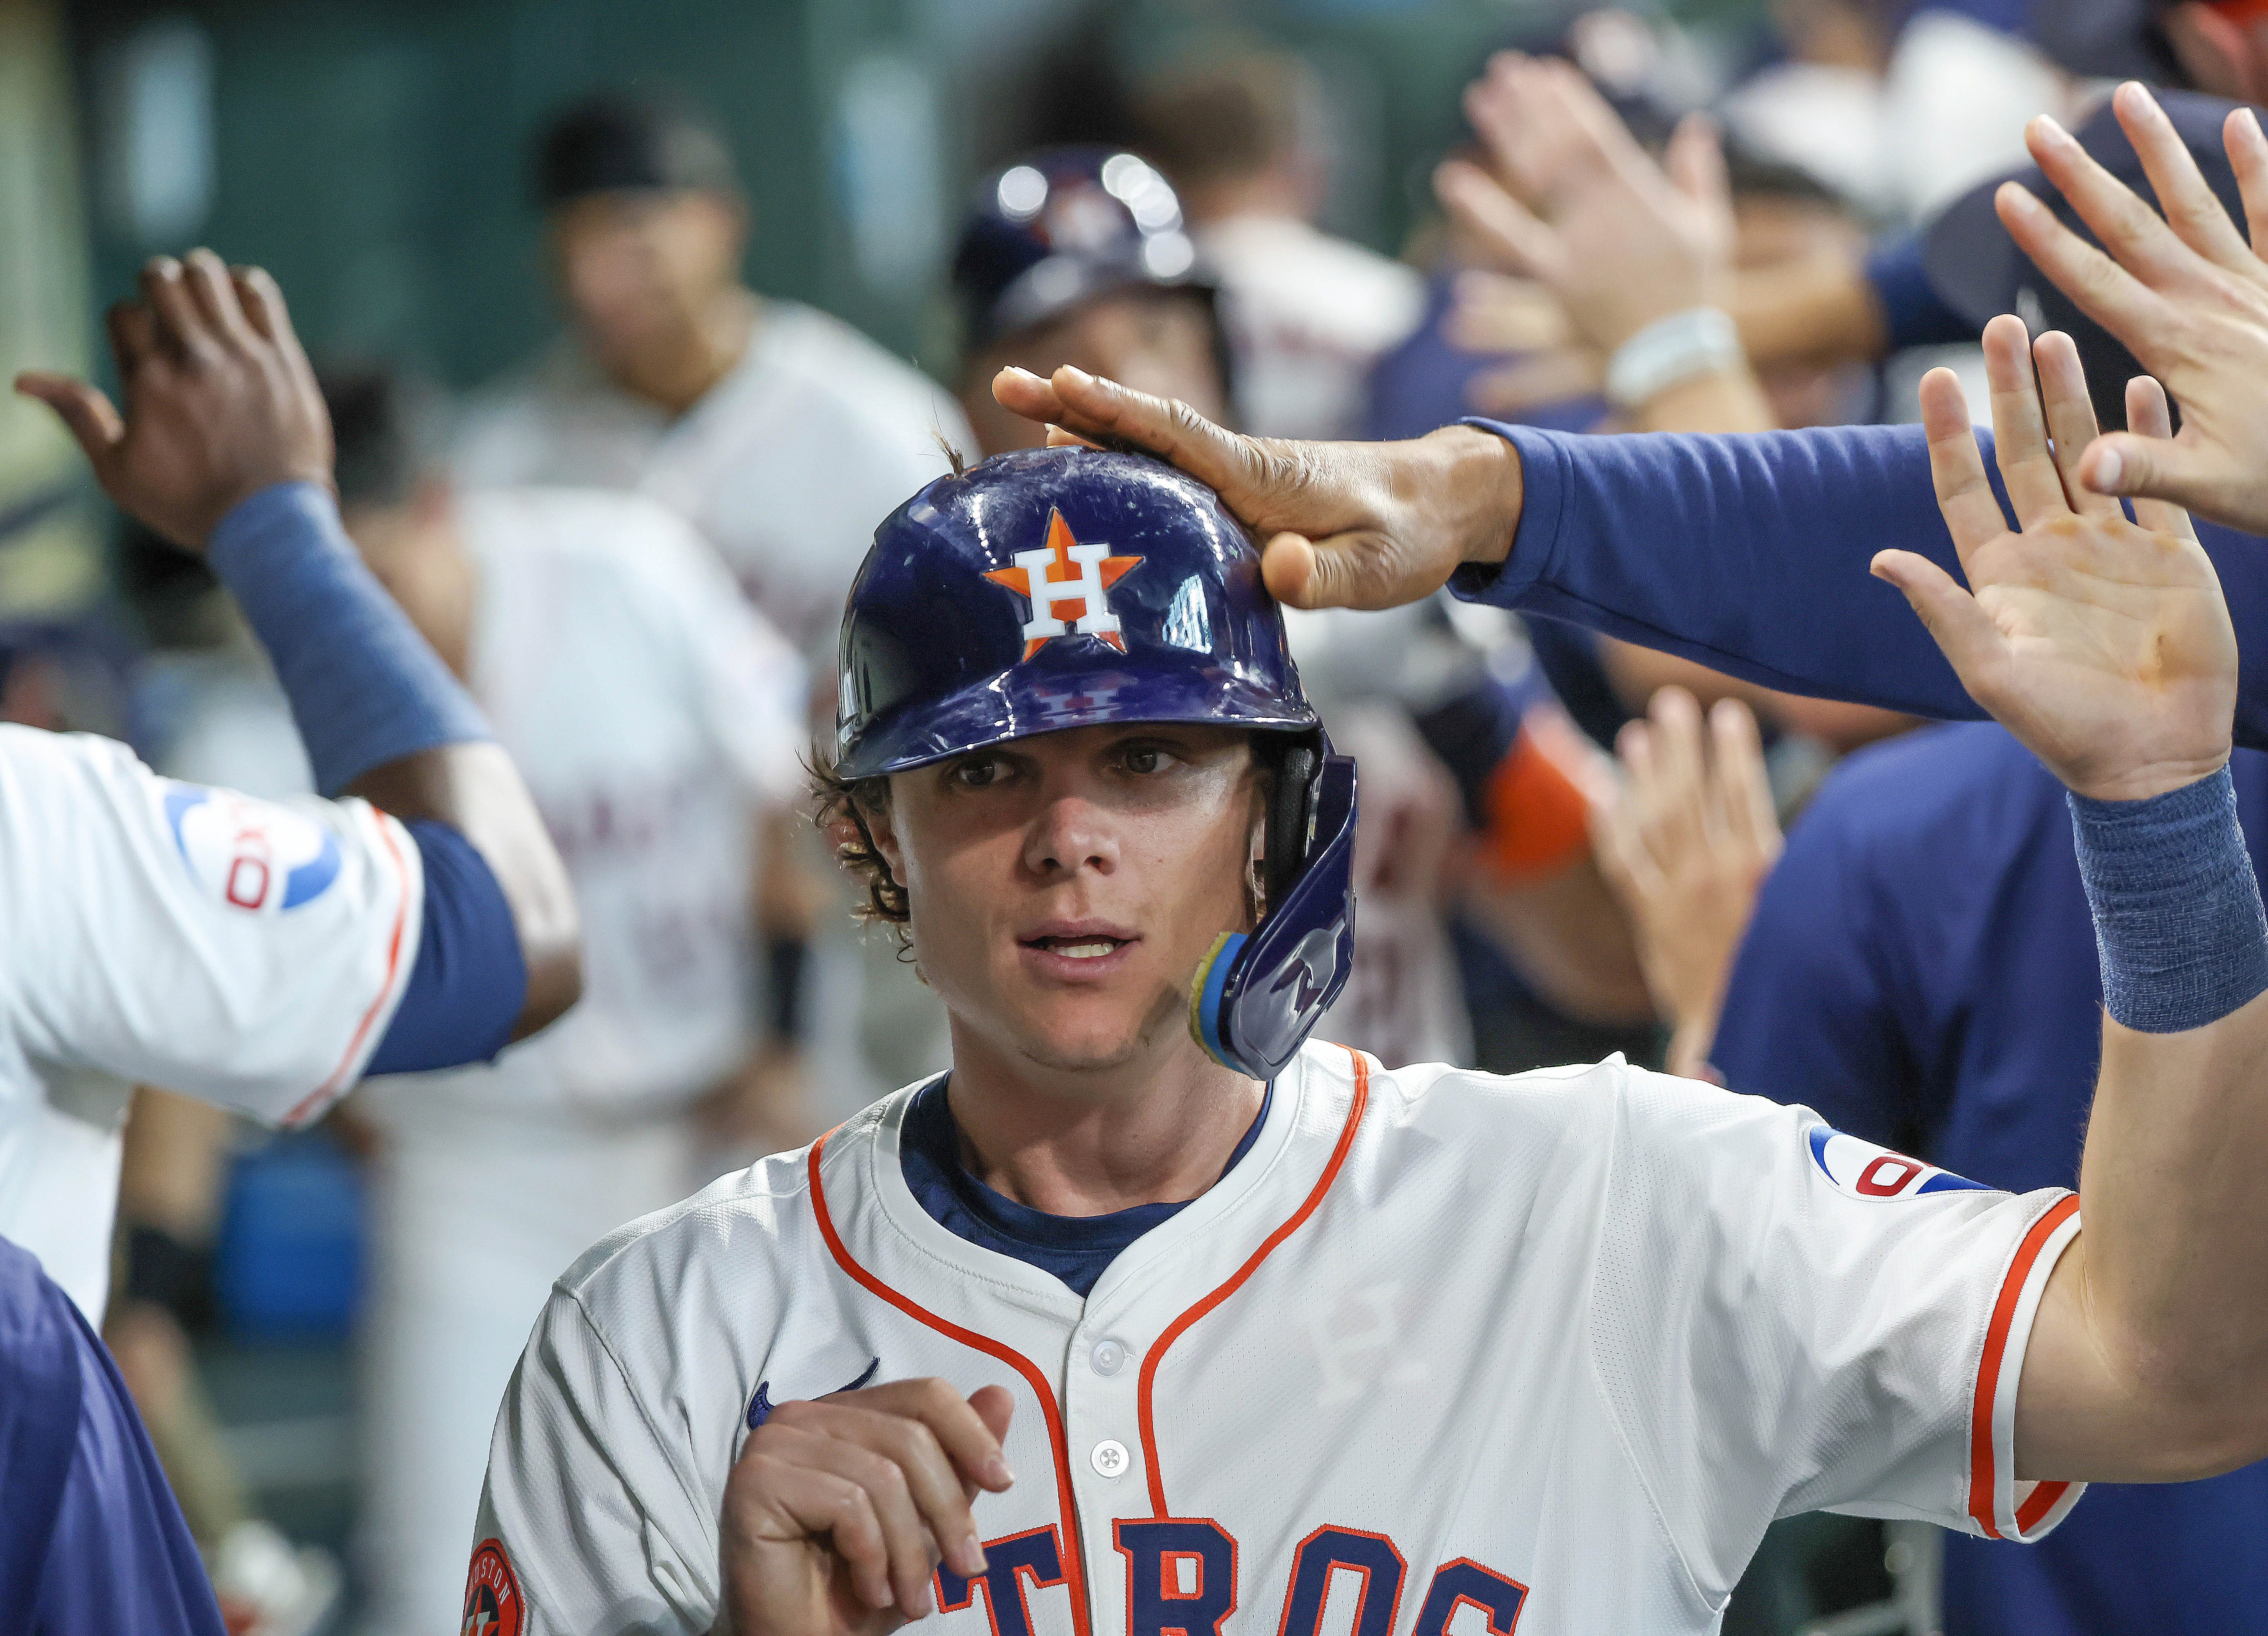 MLB: Colorado Rockies at Houston Astros